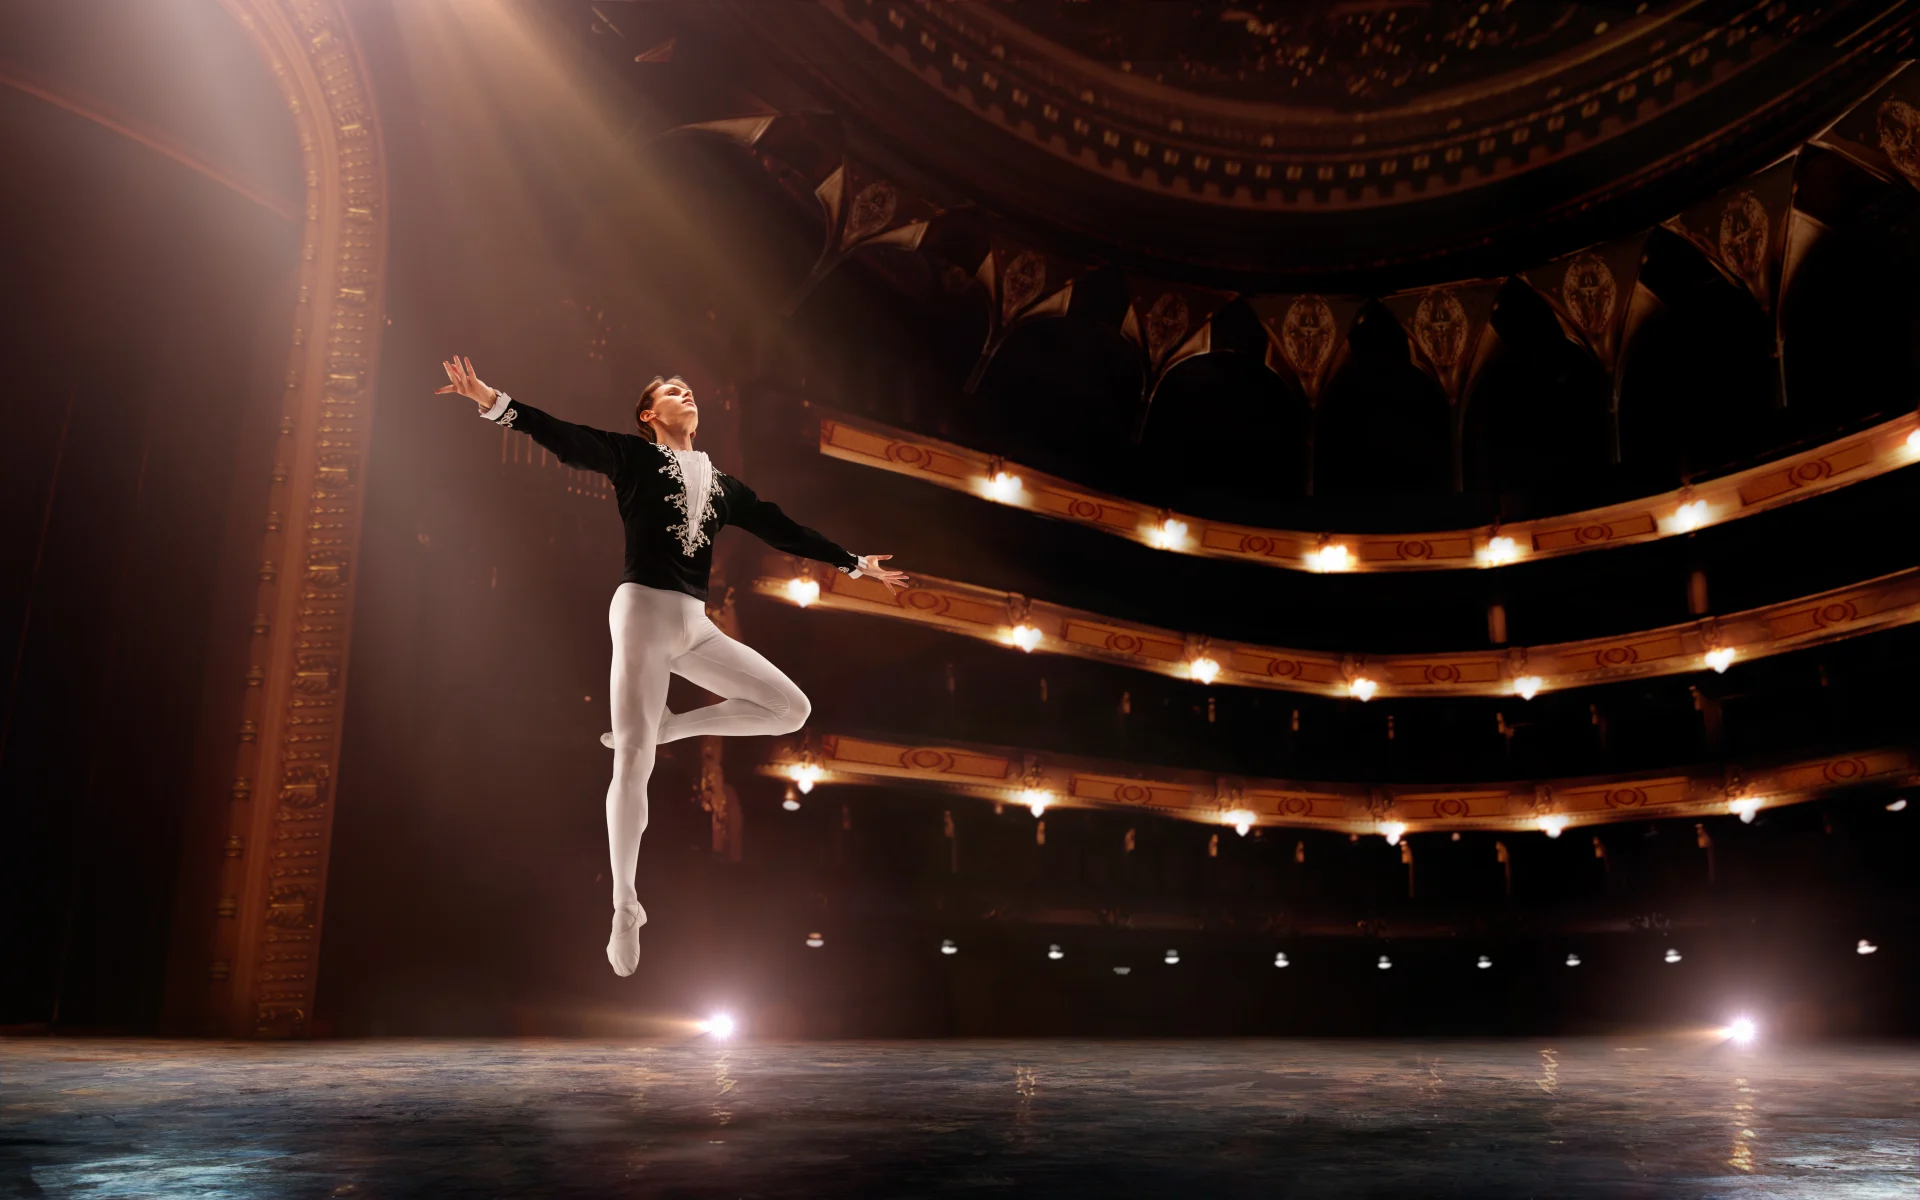 Balettitanssija esittää klassista balettia oopperatalon lavalla.